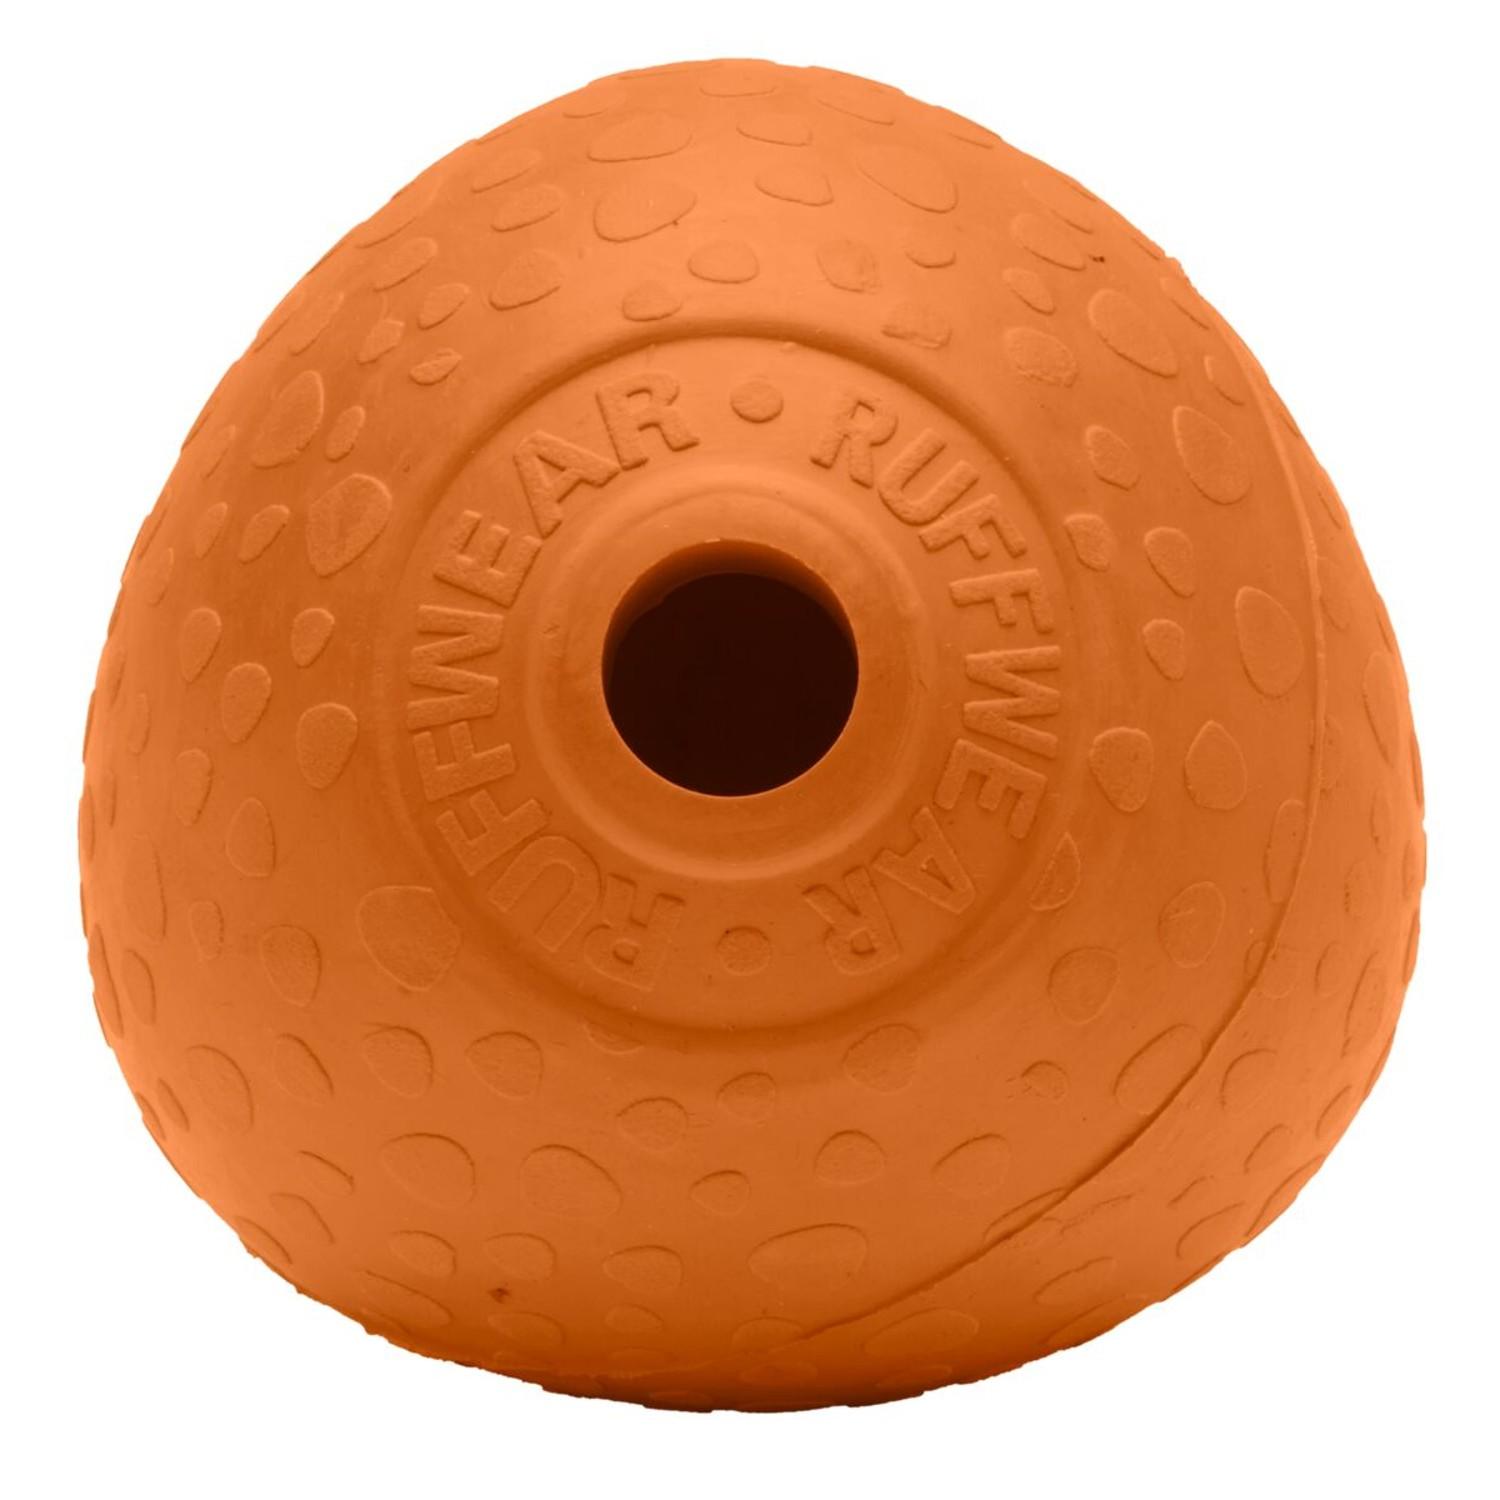 RuffWear Huckama Dog Toy - Campfire Orange